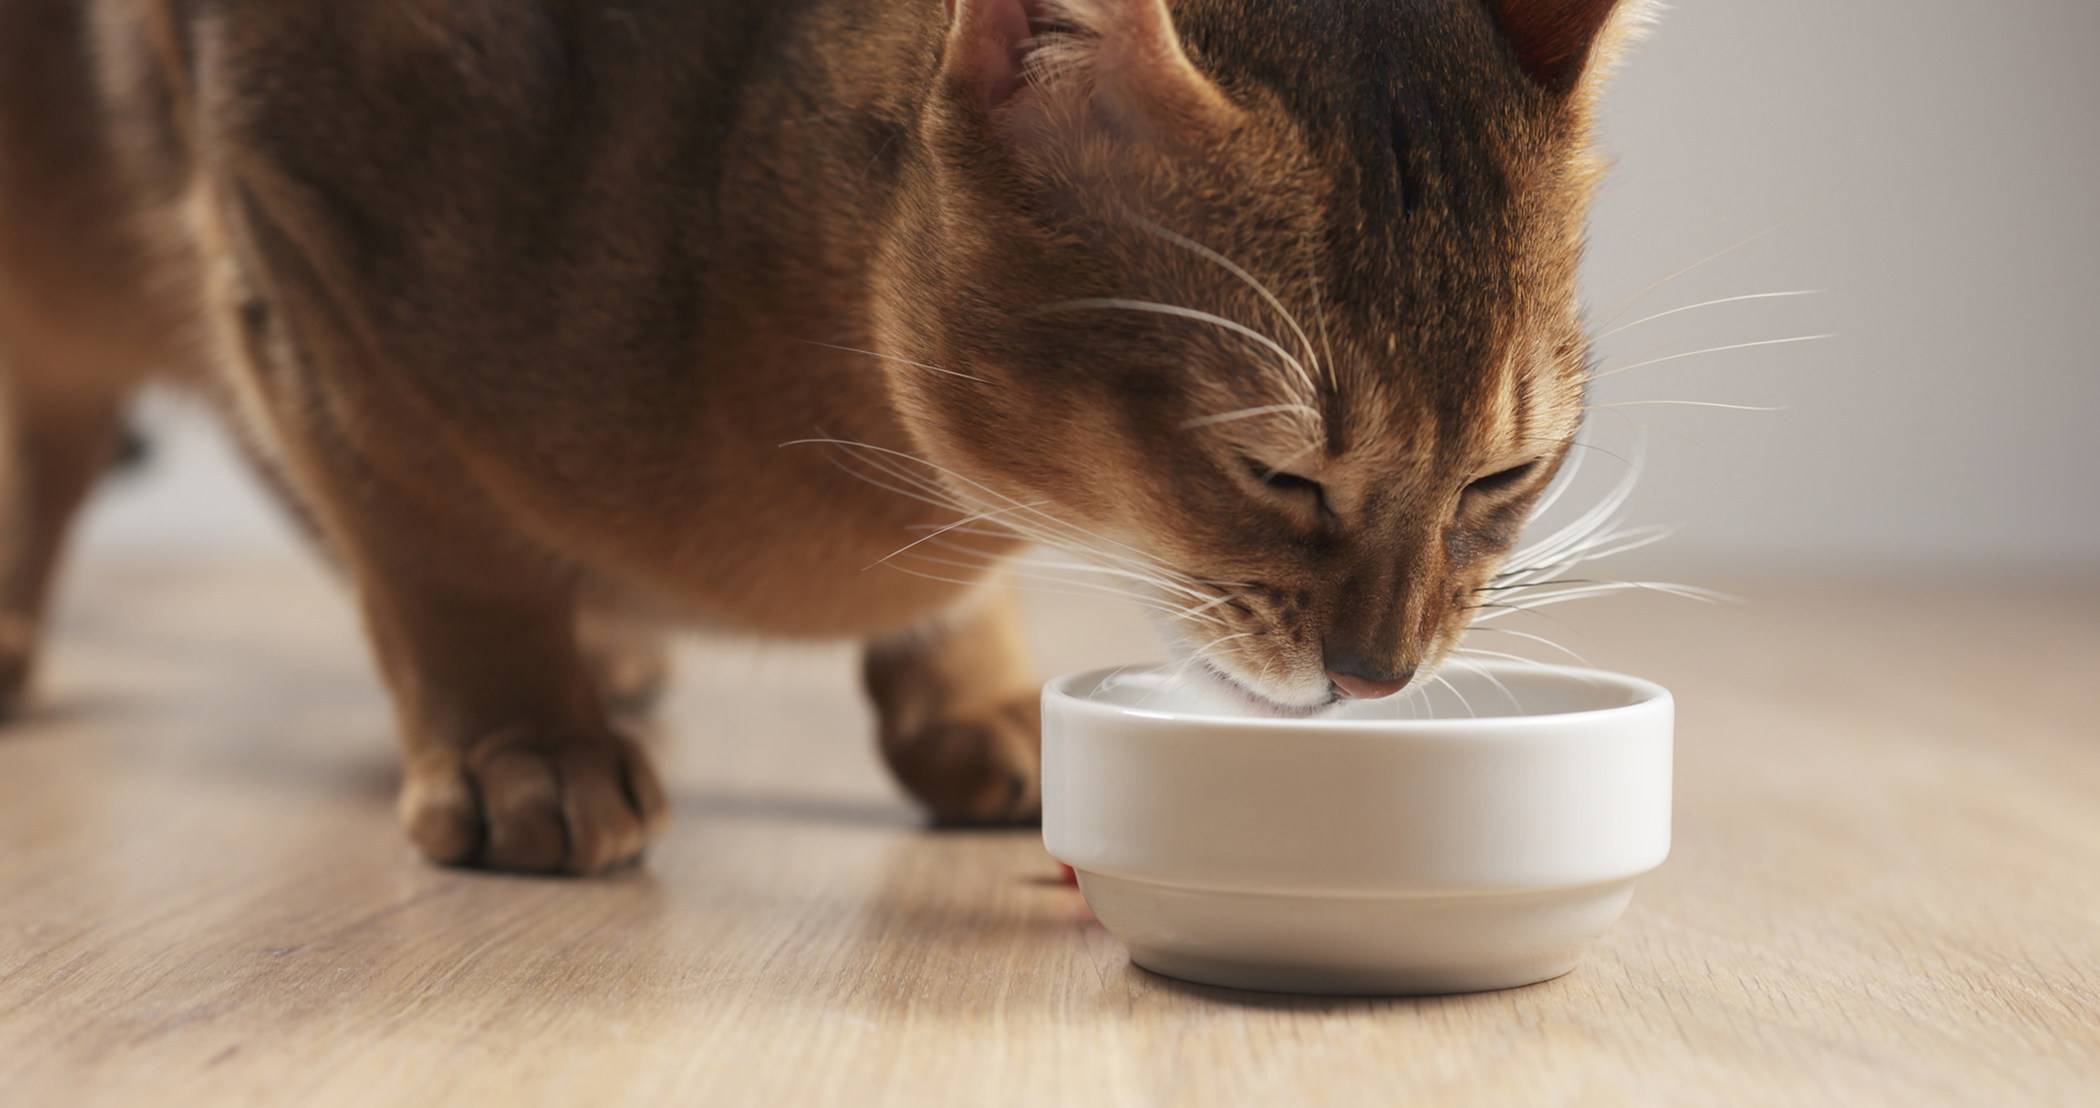 Через какое время можно кормить кошку после наркоза